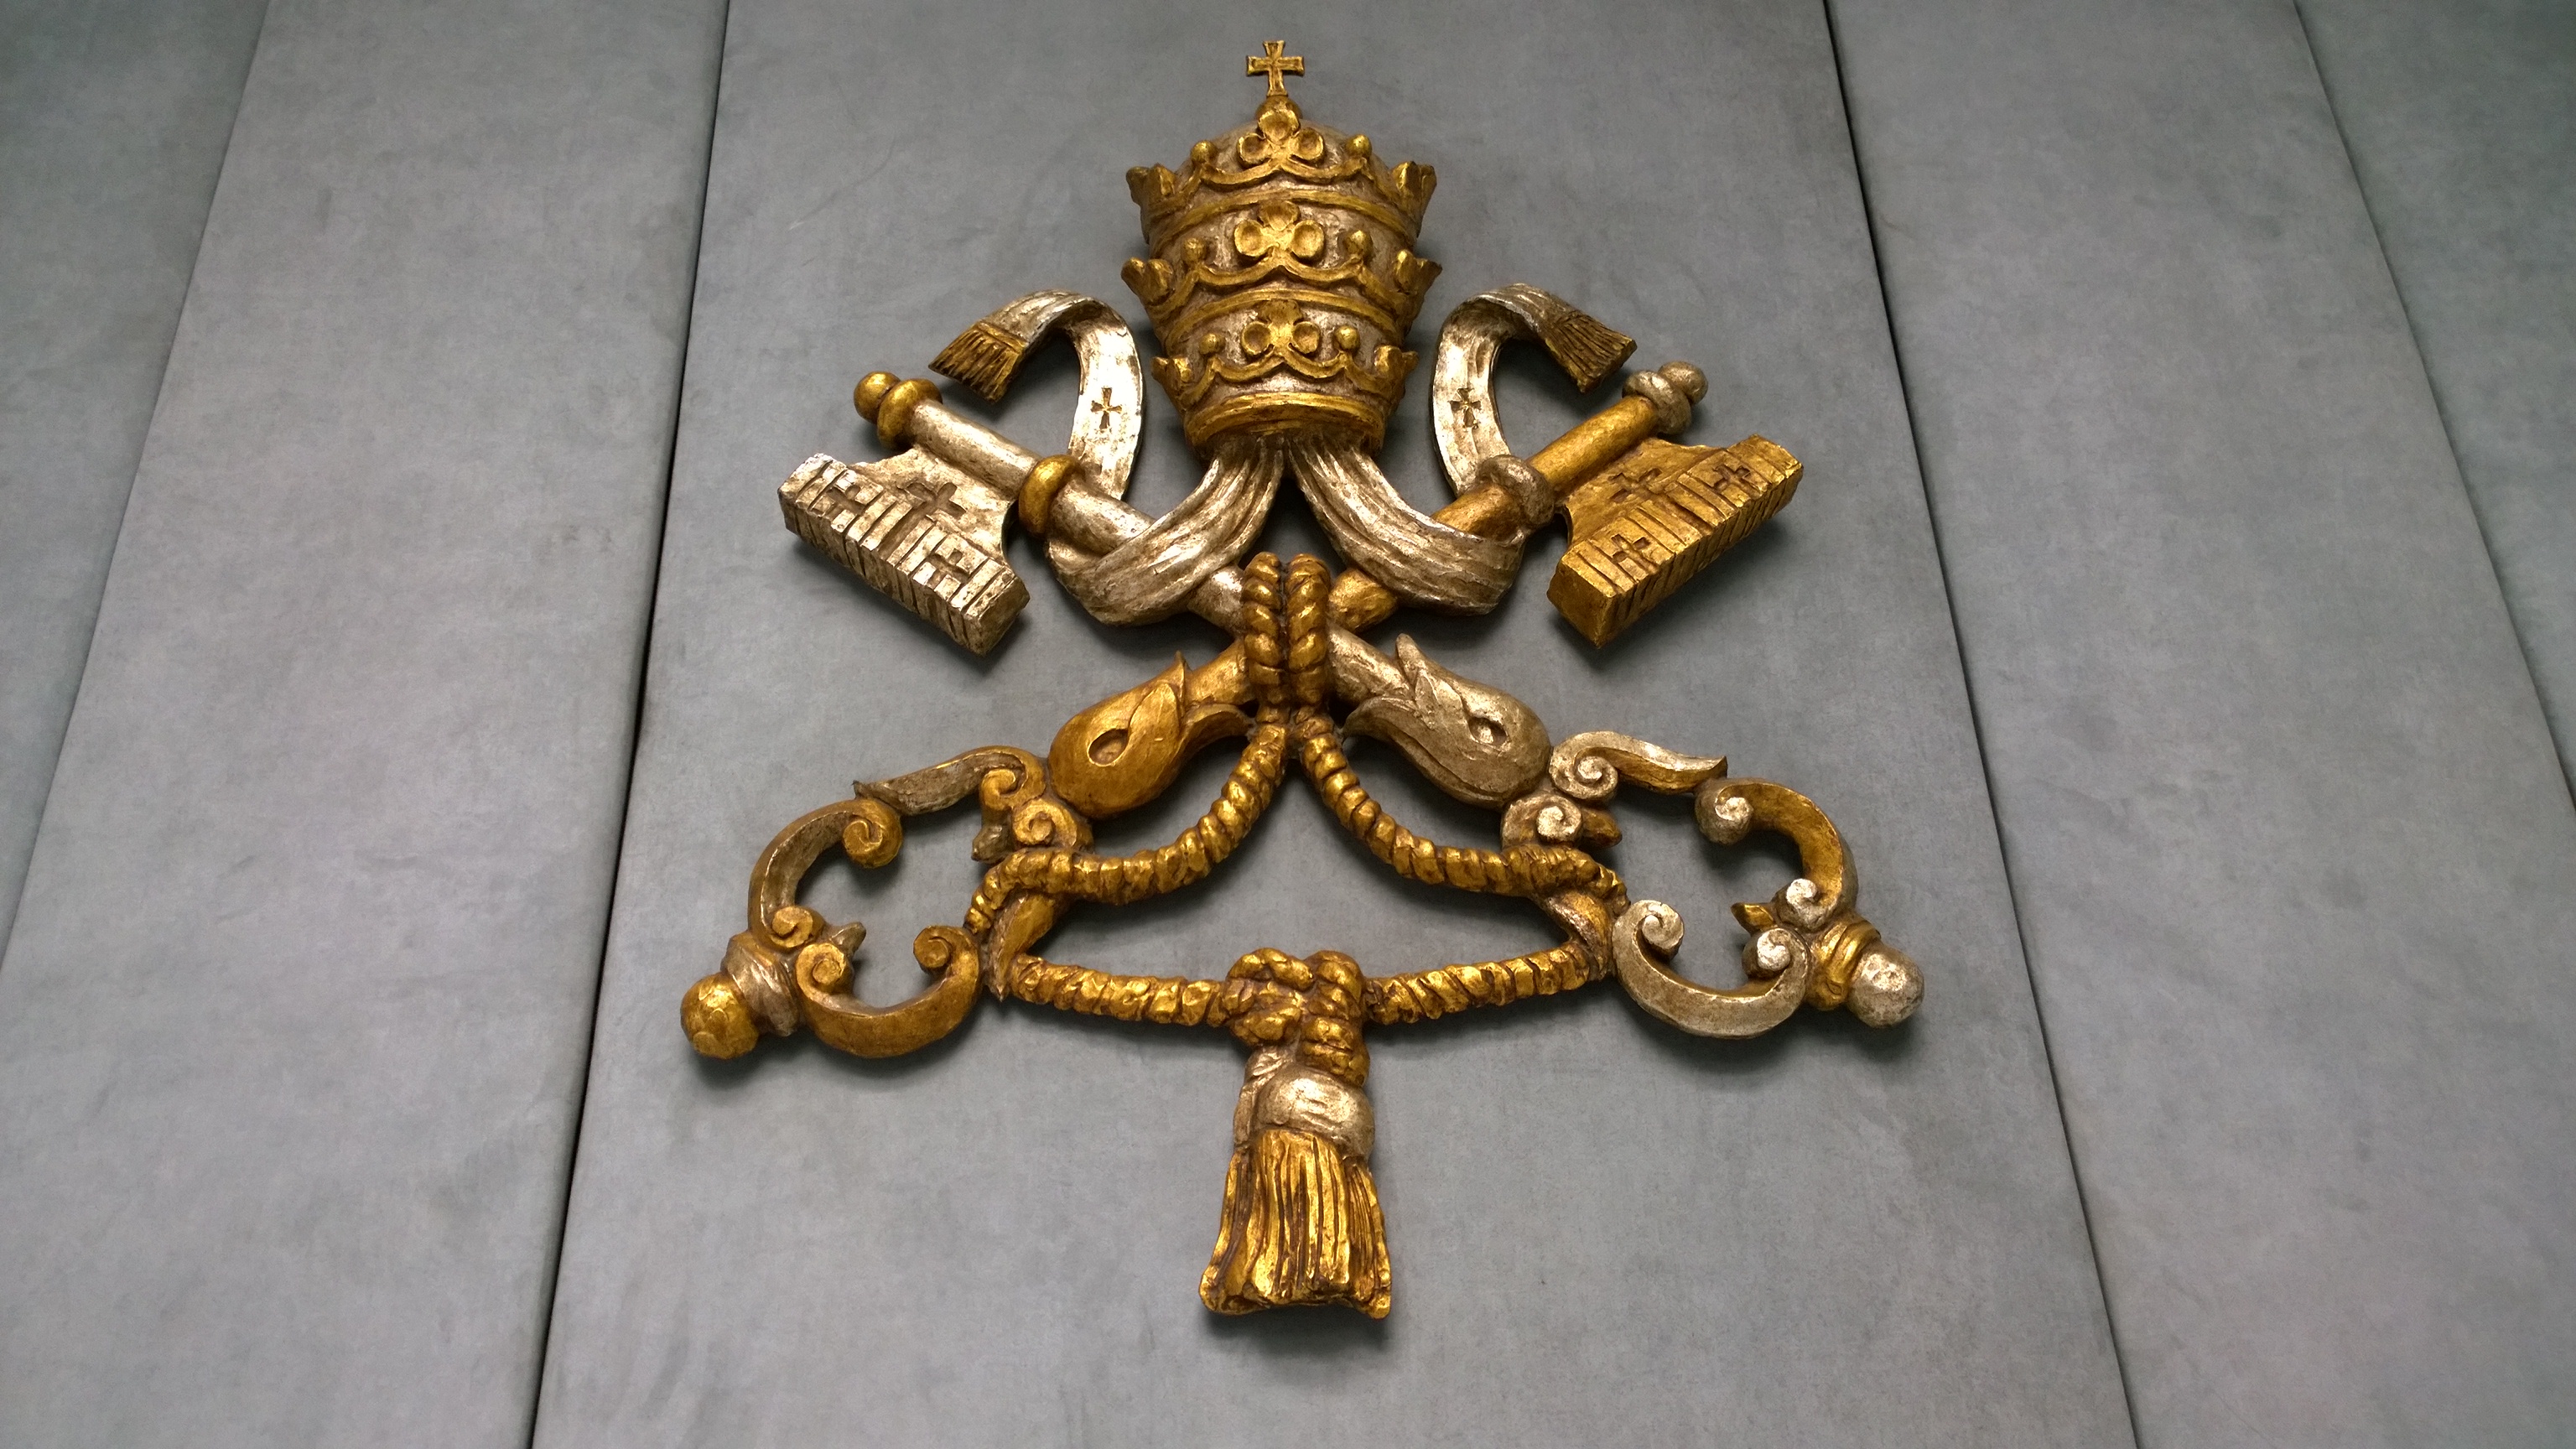 Escudo en la sala de prensa del Vaticano (Foto ZENIT cc)